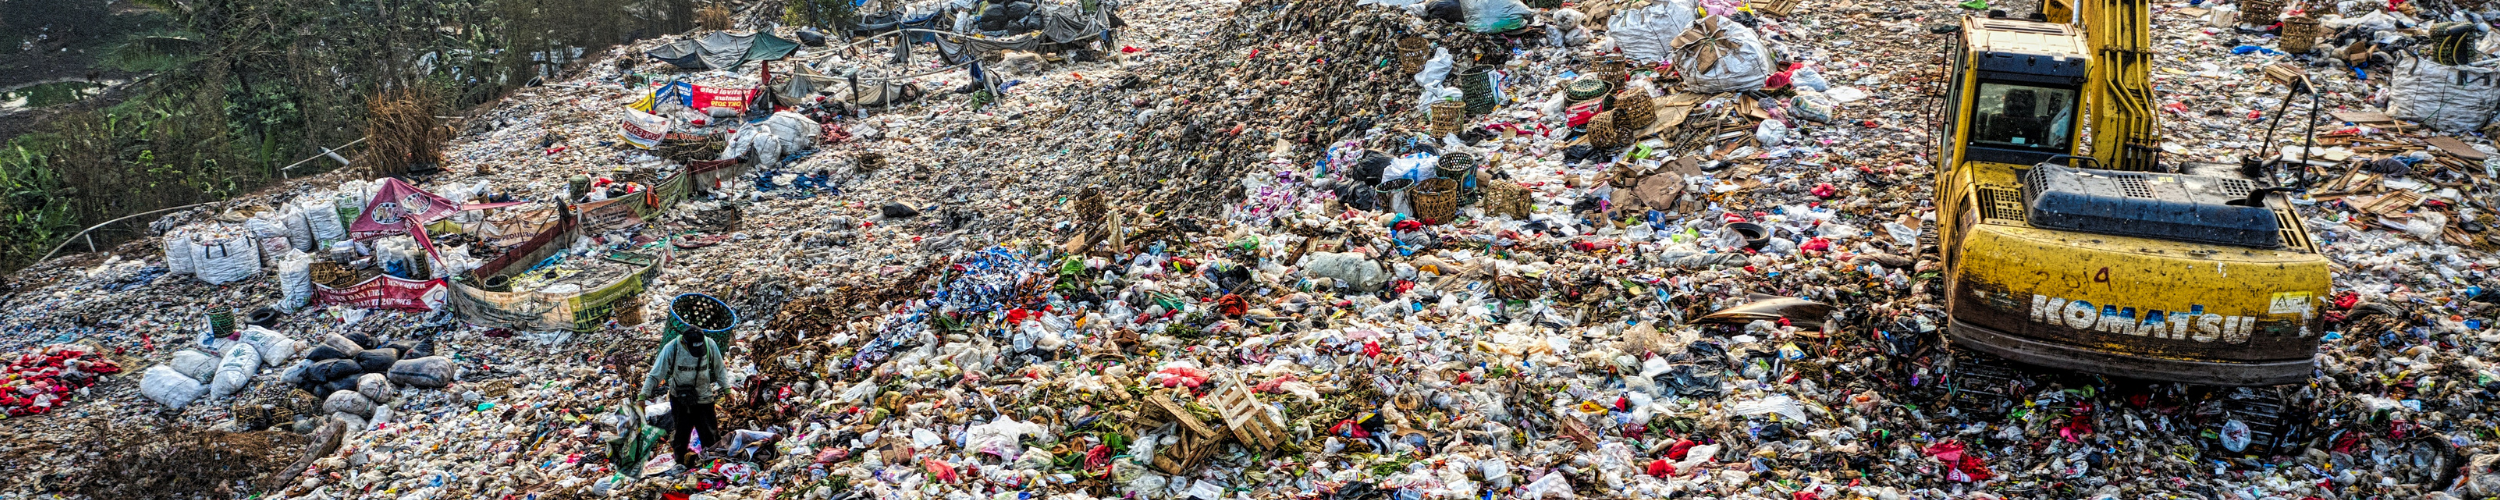 Basel convention adopts Norwegian amendment plastics ban